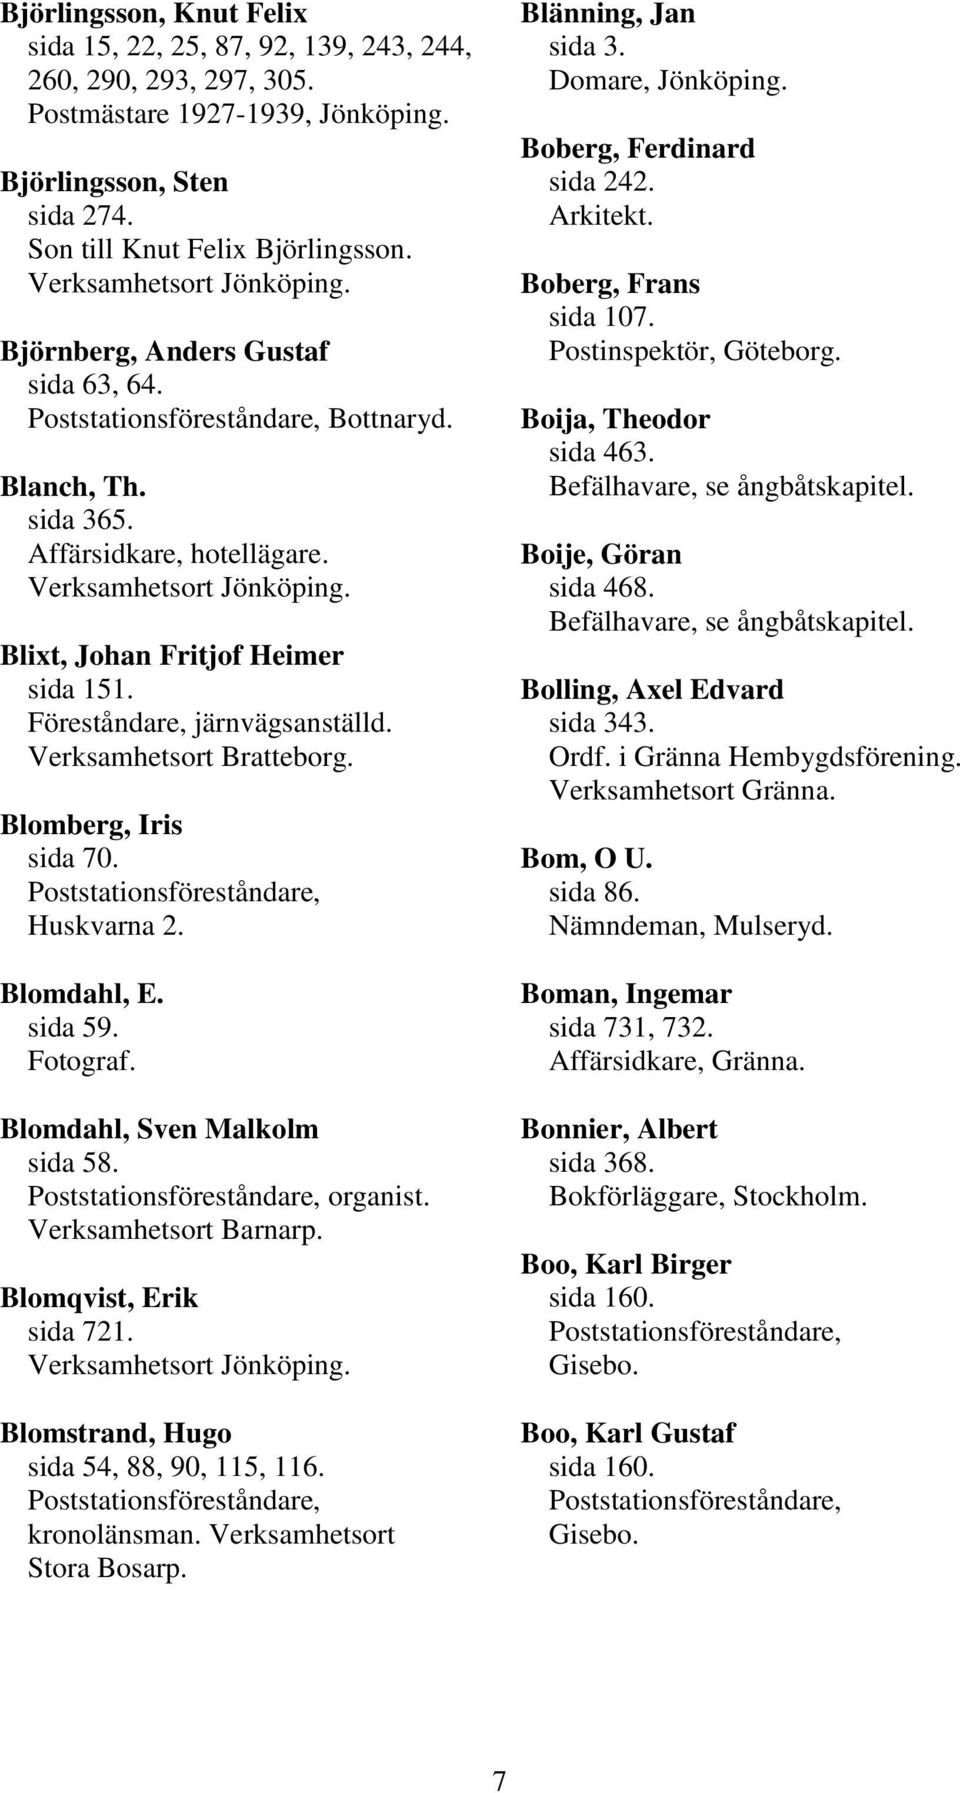 Blomdahl, E. sida 59. Fotograf. Blomdahl, Sven Malkolm sida 58. organist. Verksamhetsort Barnarp. Blomqvist, Erik sida 721. Blomstrand, Hugo sida 54, 88, 90, 115, 116. kronolänsman.